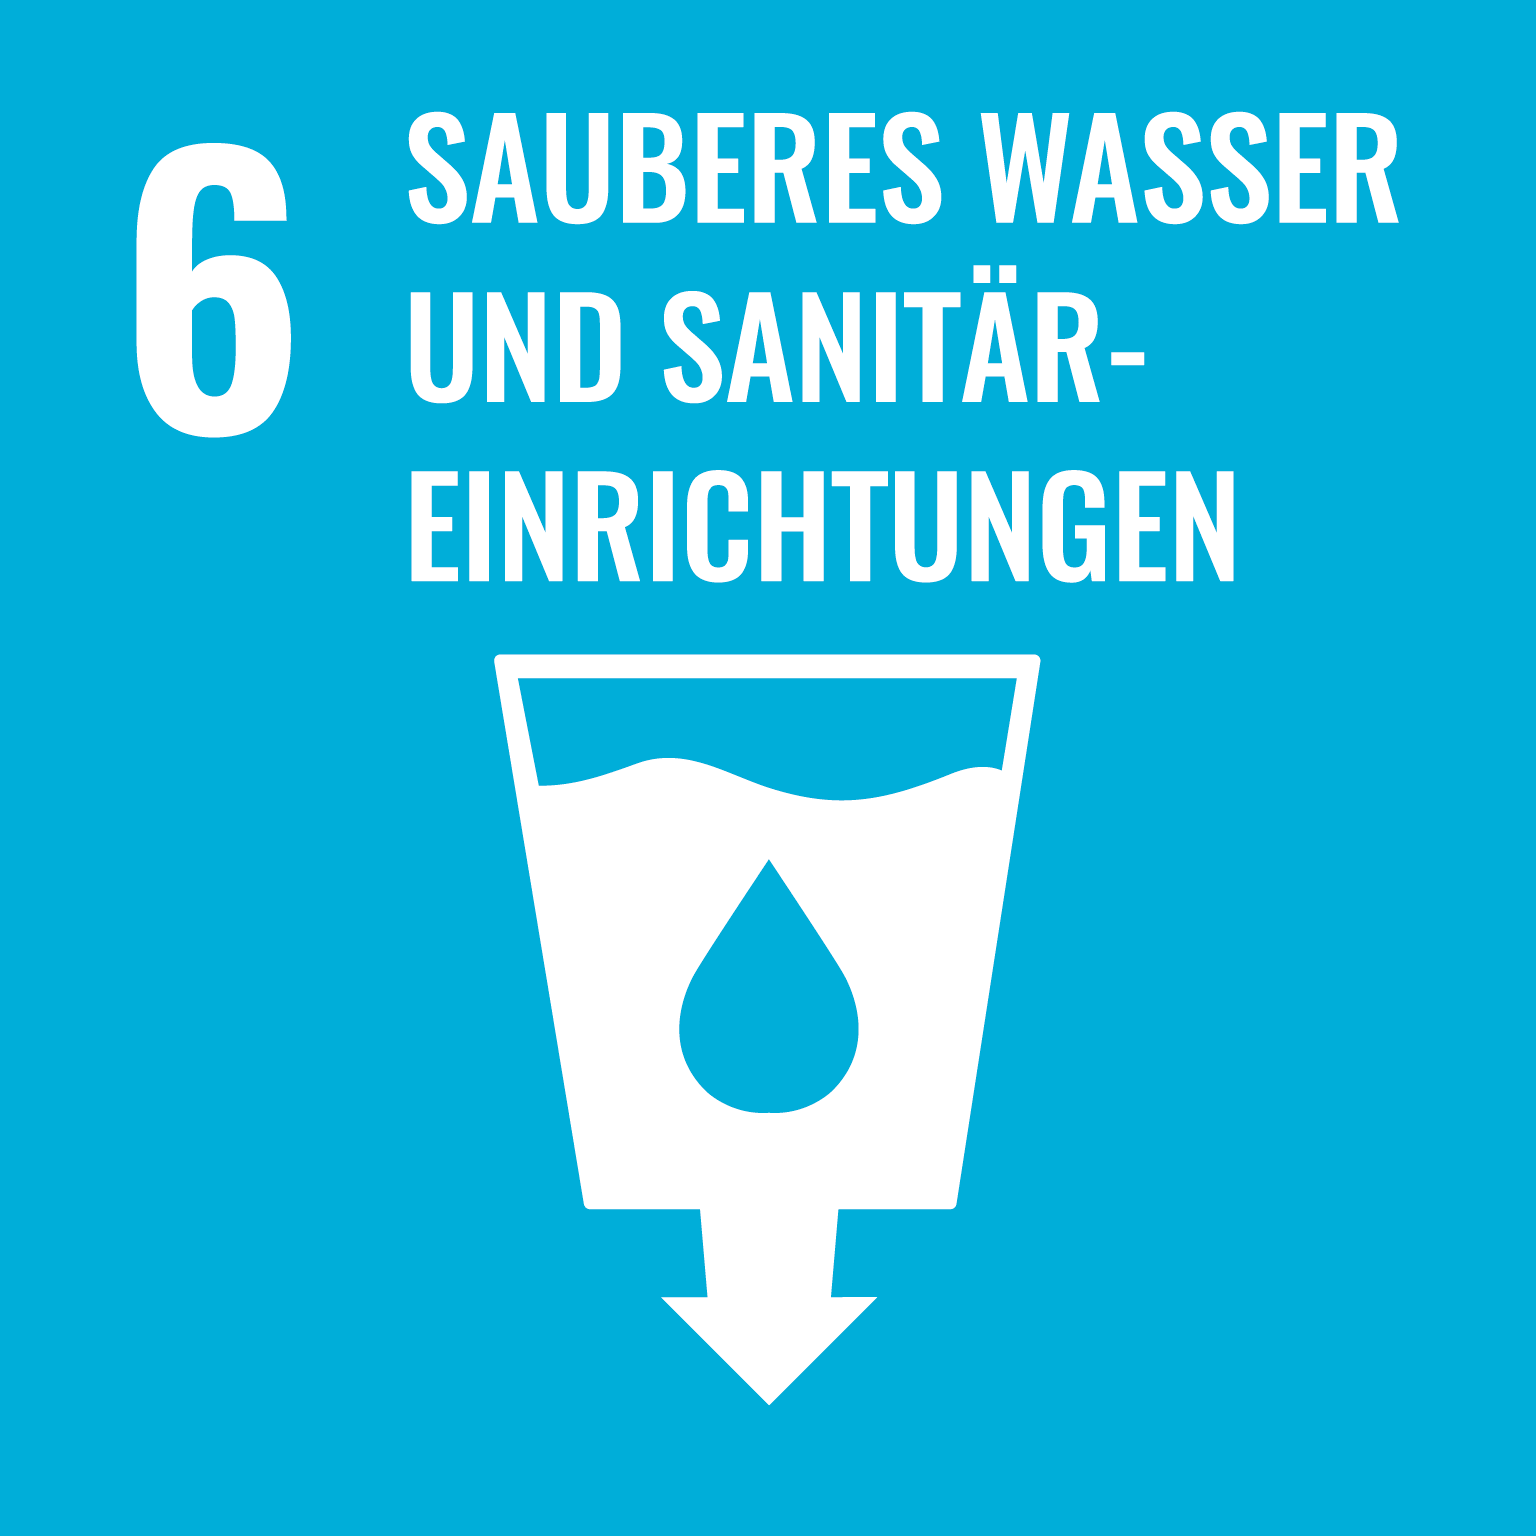 6 Sauberes Wasser und sanitäre Einrichtungen